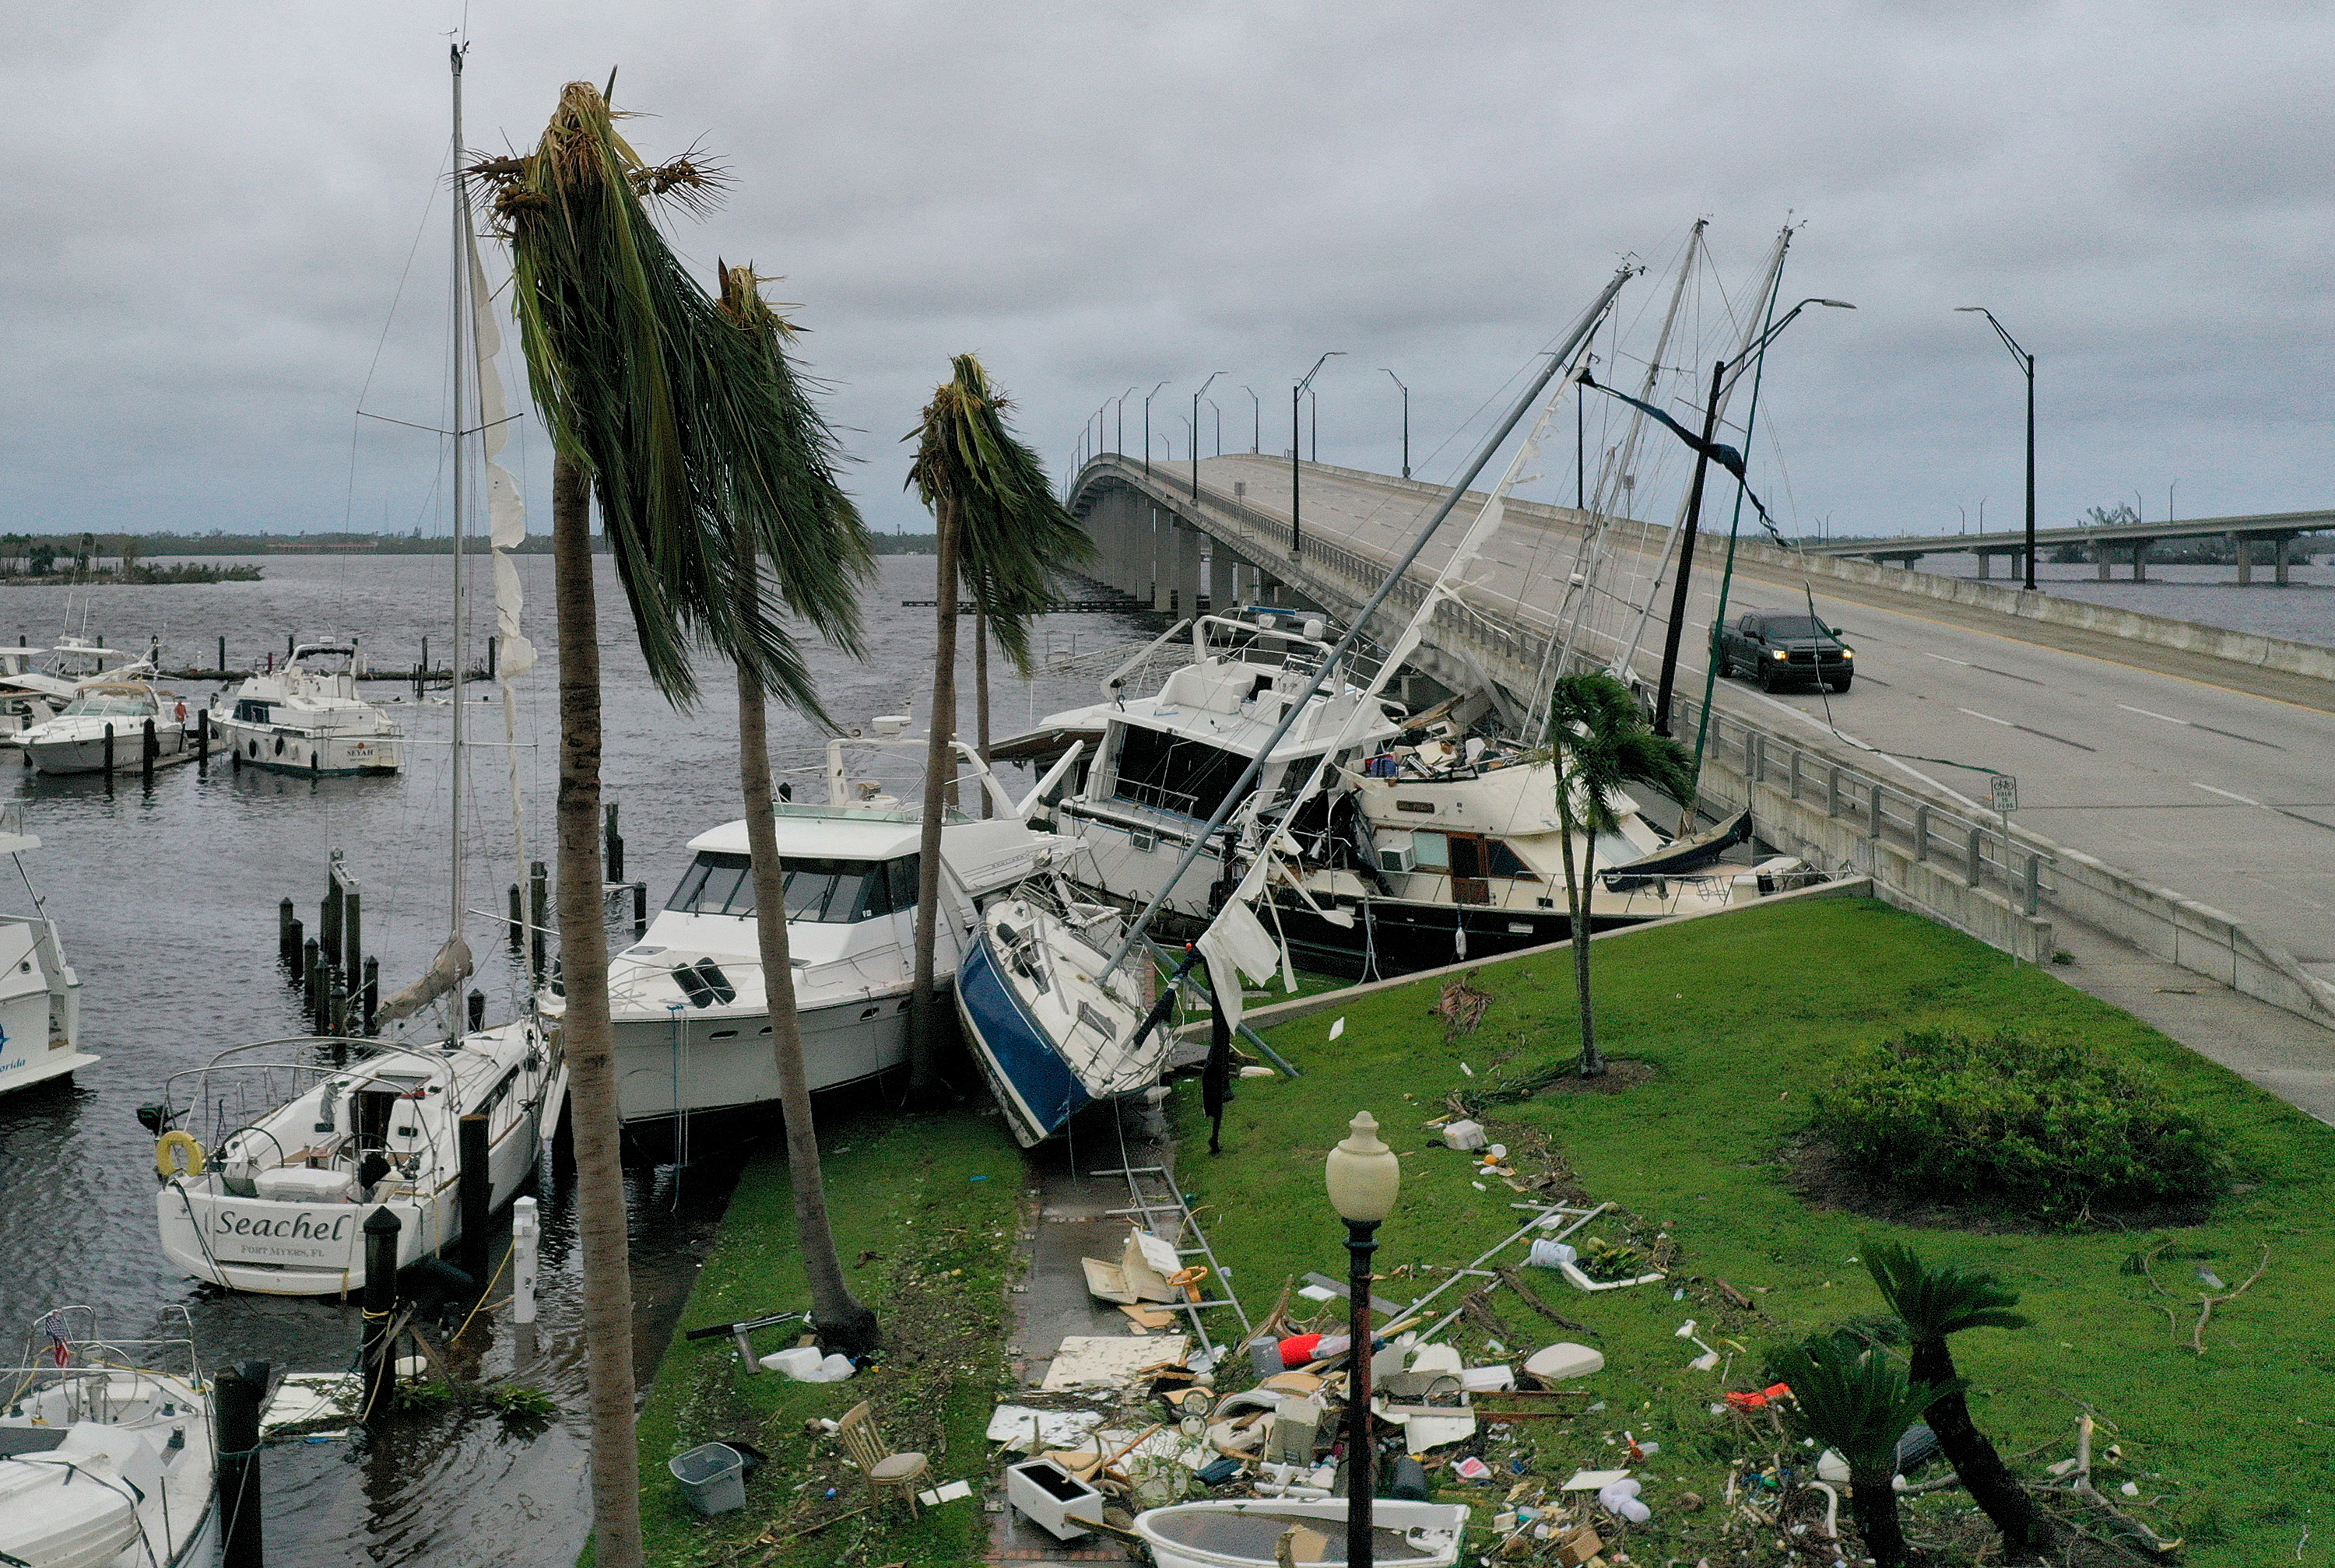 Los botes son empujados hacia arriba en una calzada después de que el huracán Ian pasara por el área el 29 de septiembre de 2022 en Fort Myers, Florida. (JOE RAEDLE / GETTY IMAGES NORTH AMERICA / Getty Images via AFP)